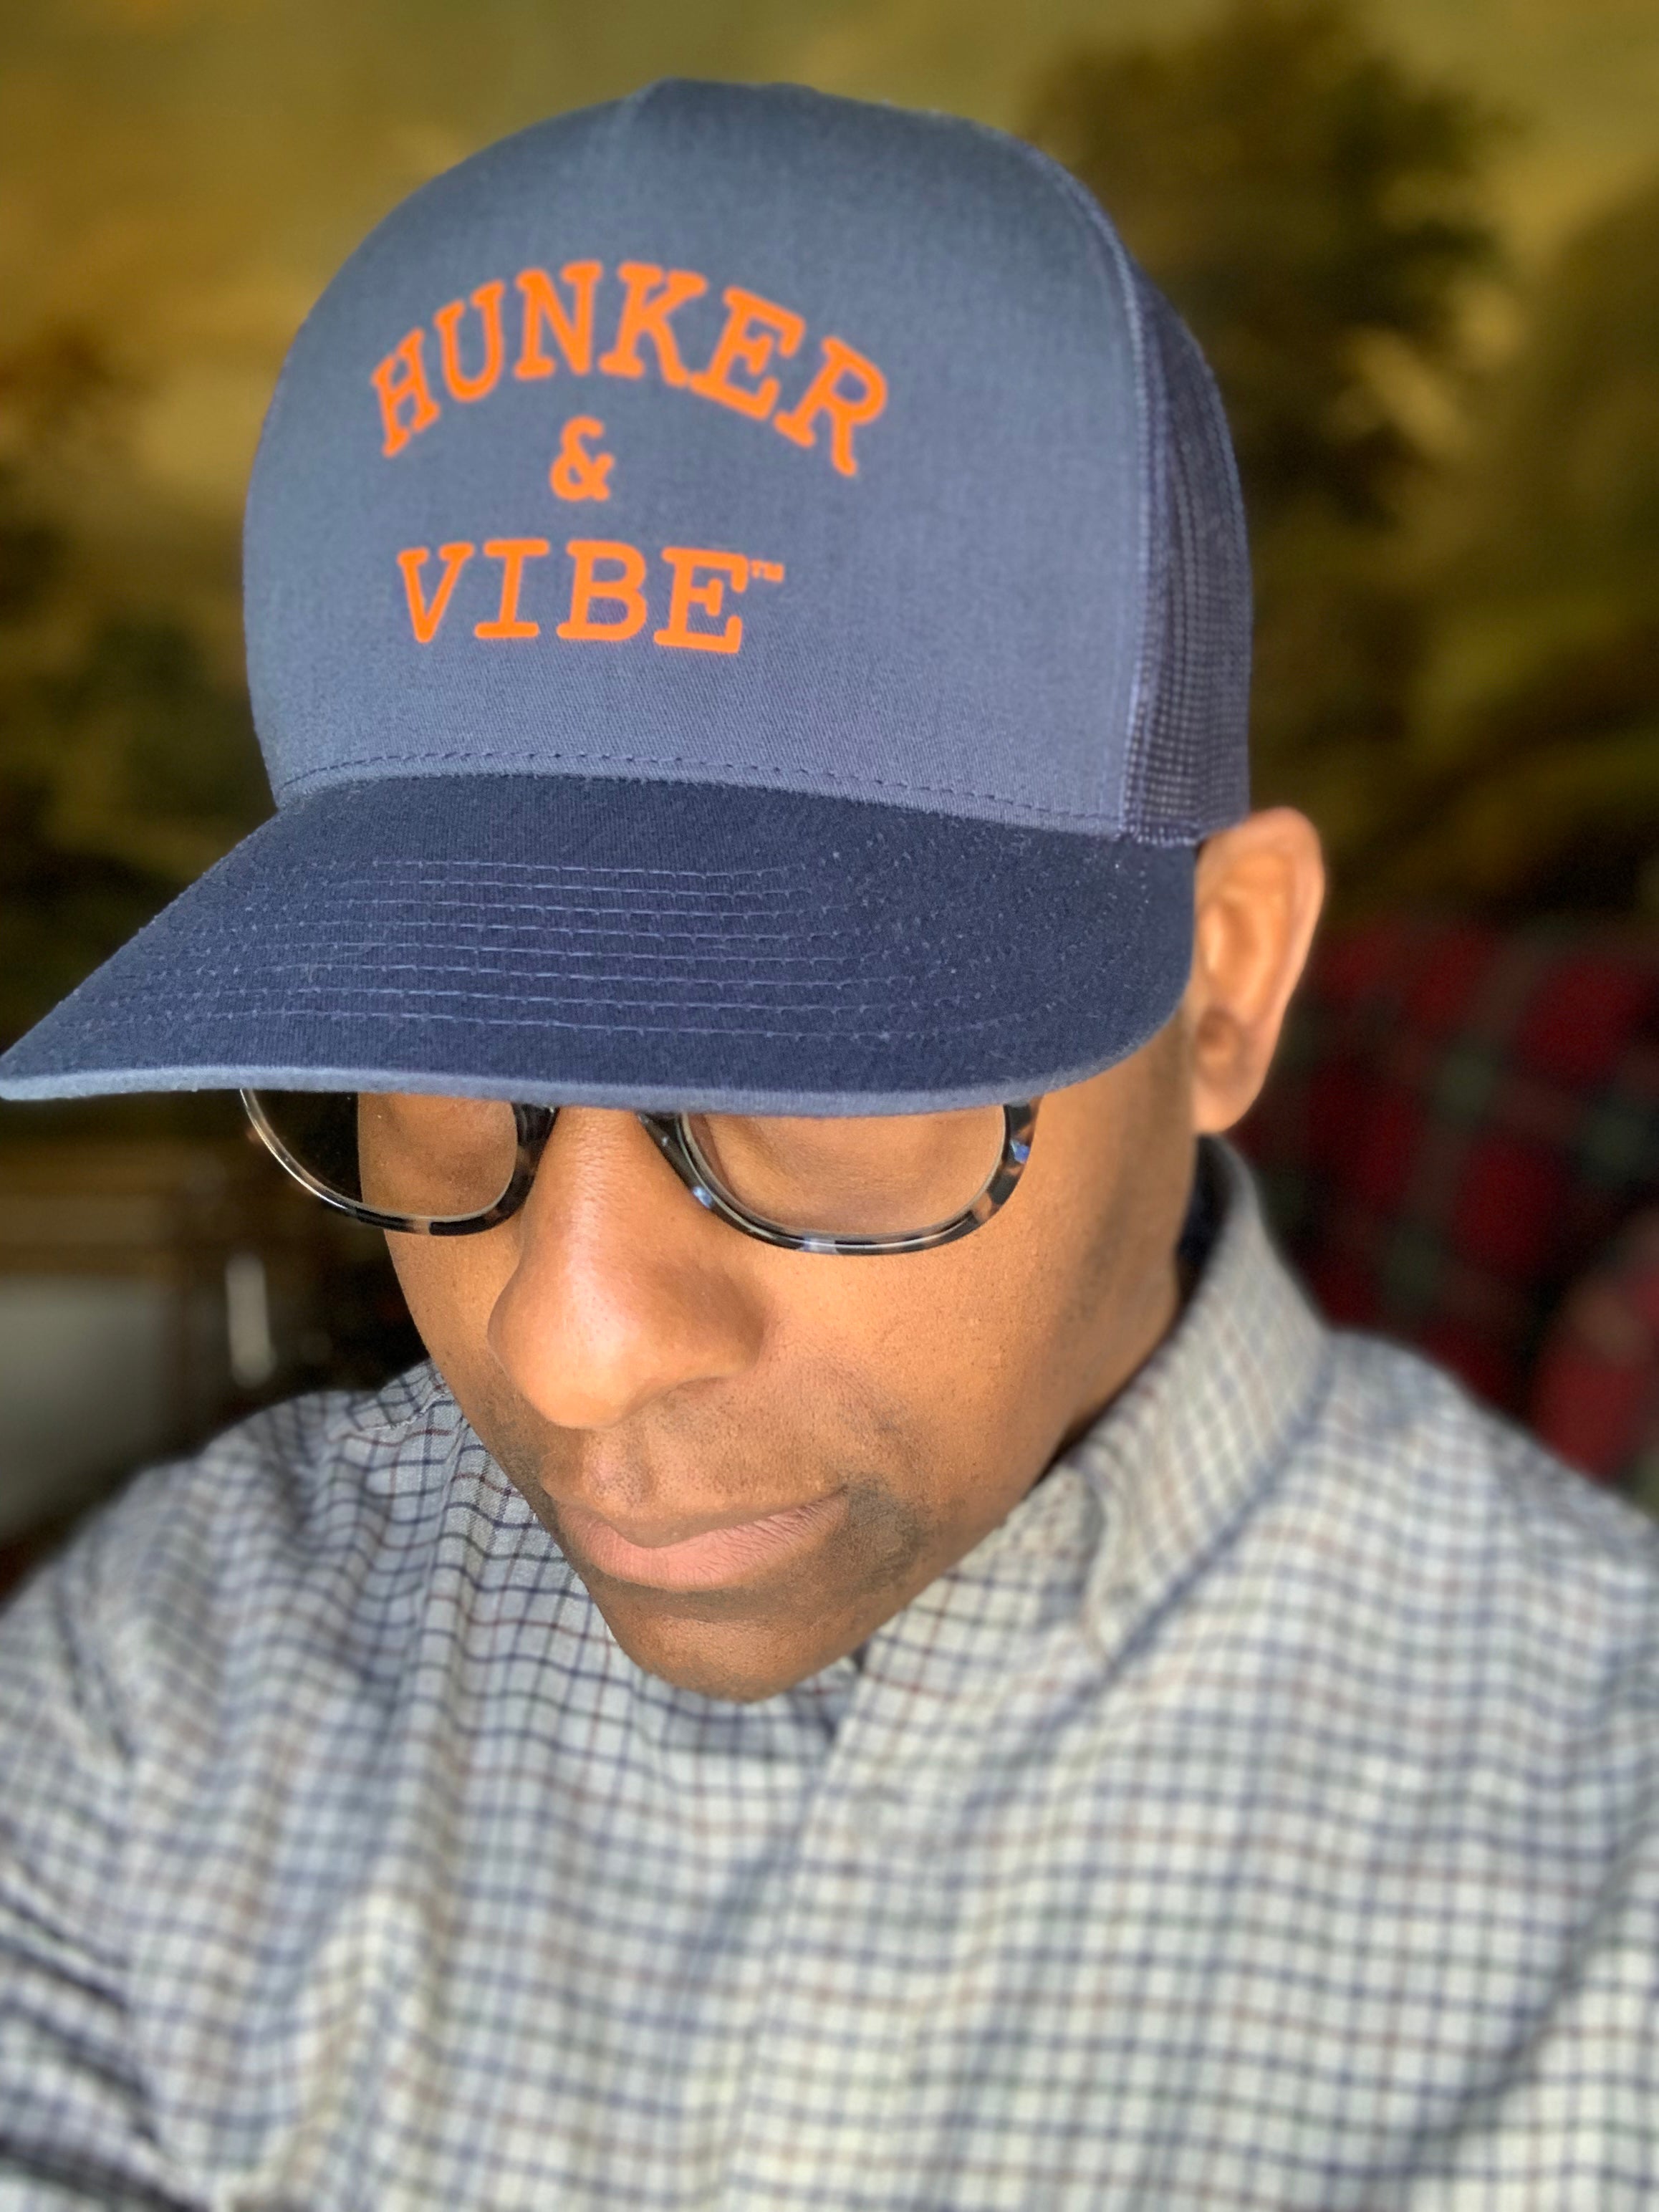 The Hunker & Vibe Trucker Hat